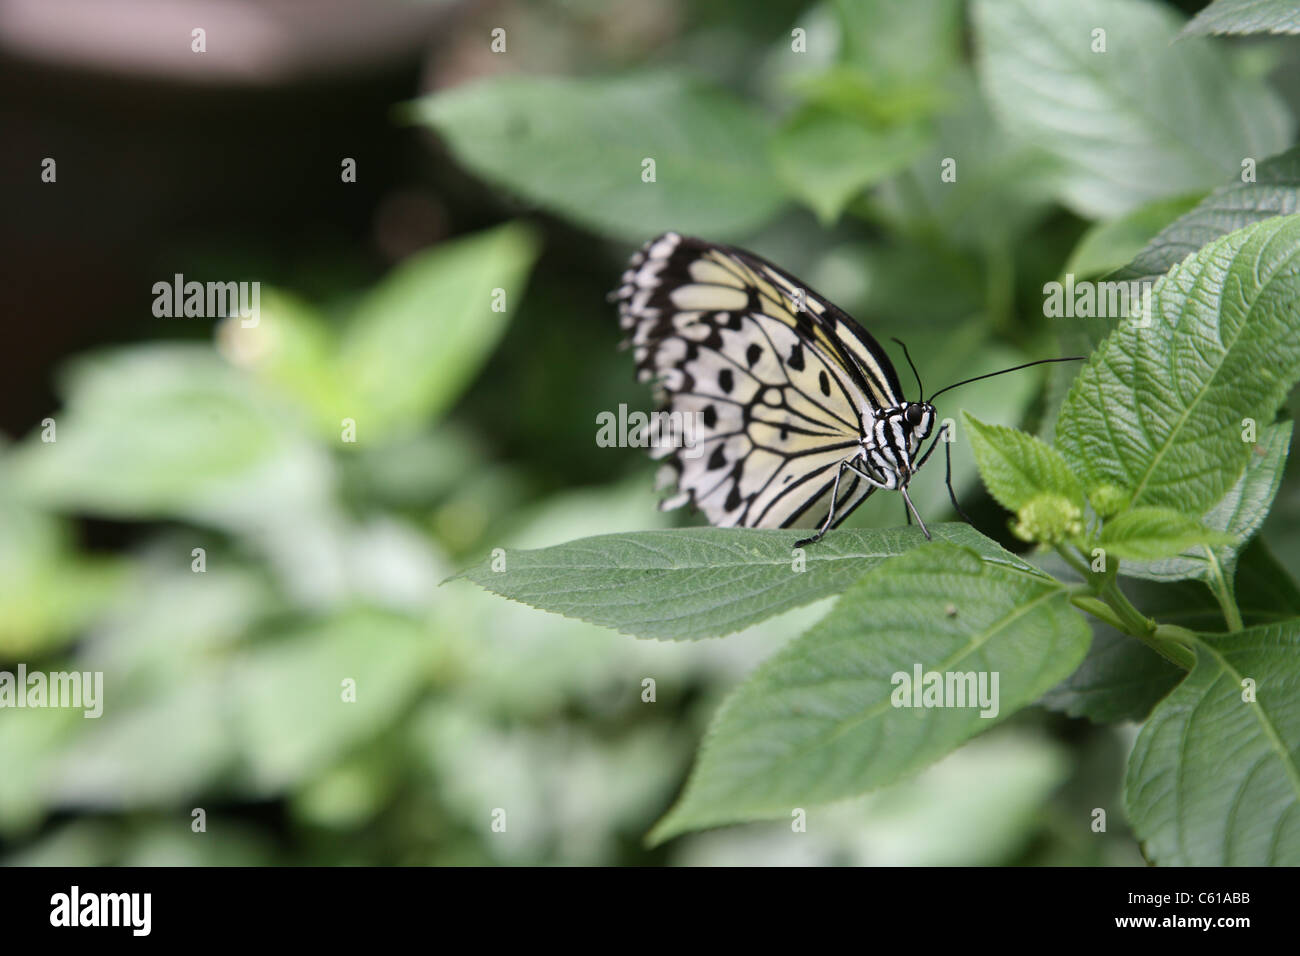 Farfalla bianca e nera su una foglia zoomando in voi sarà in grado di vedere la forma sorprendente del corpo delle farfalle. Foto Stock